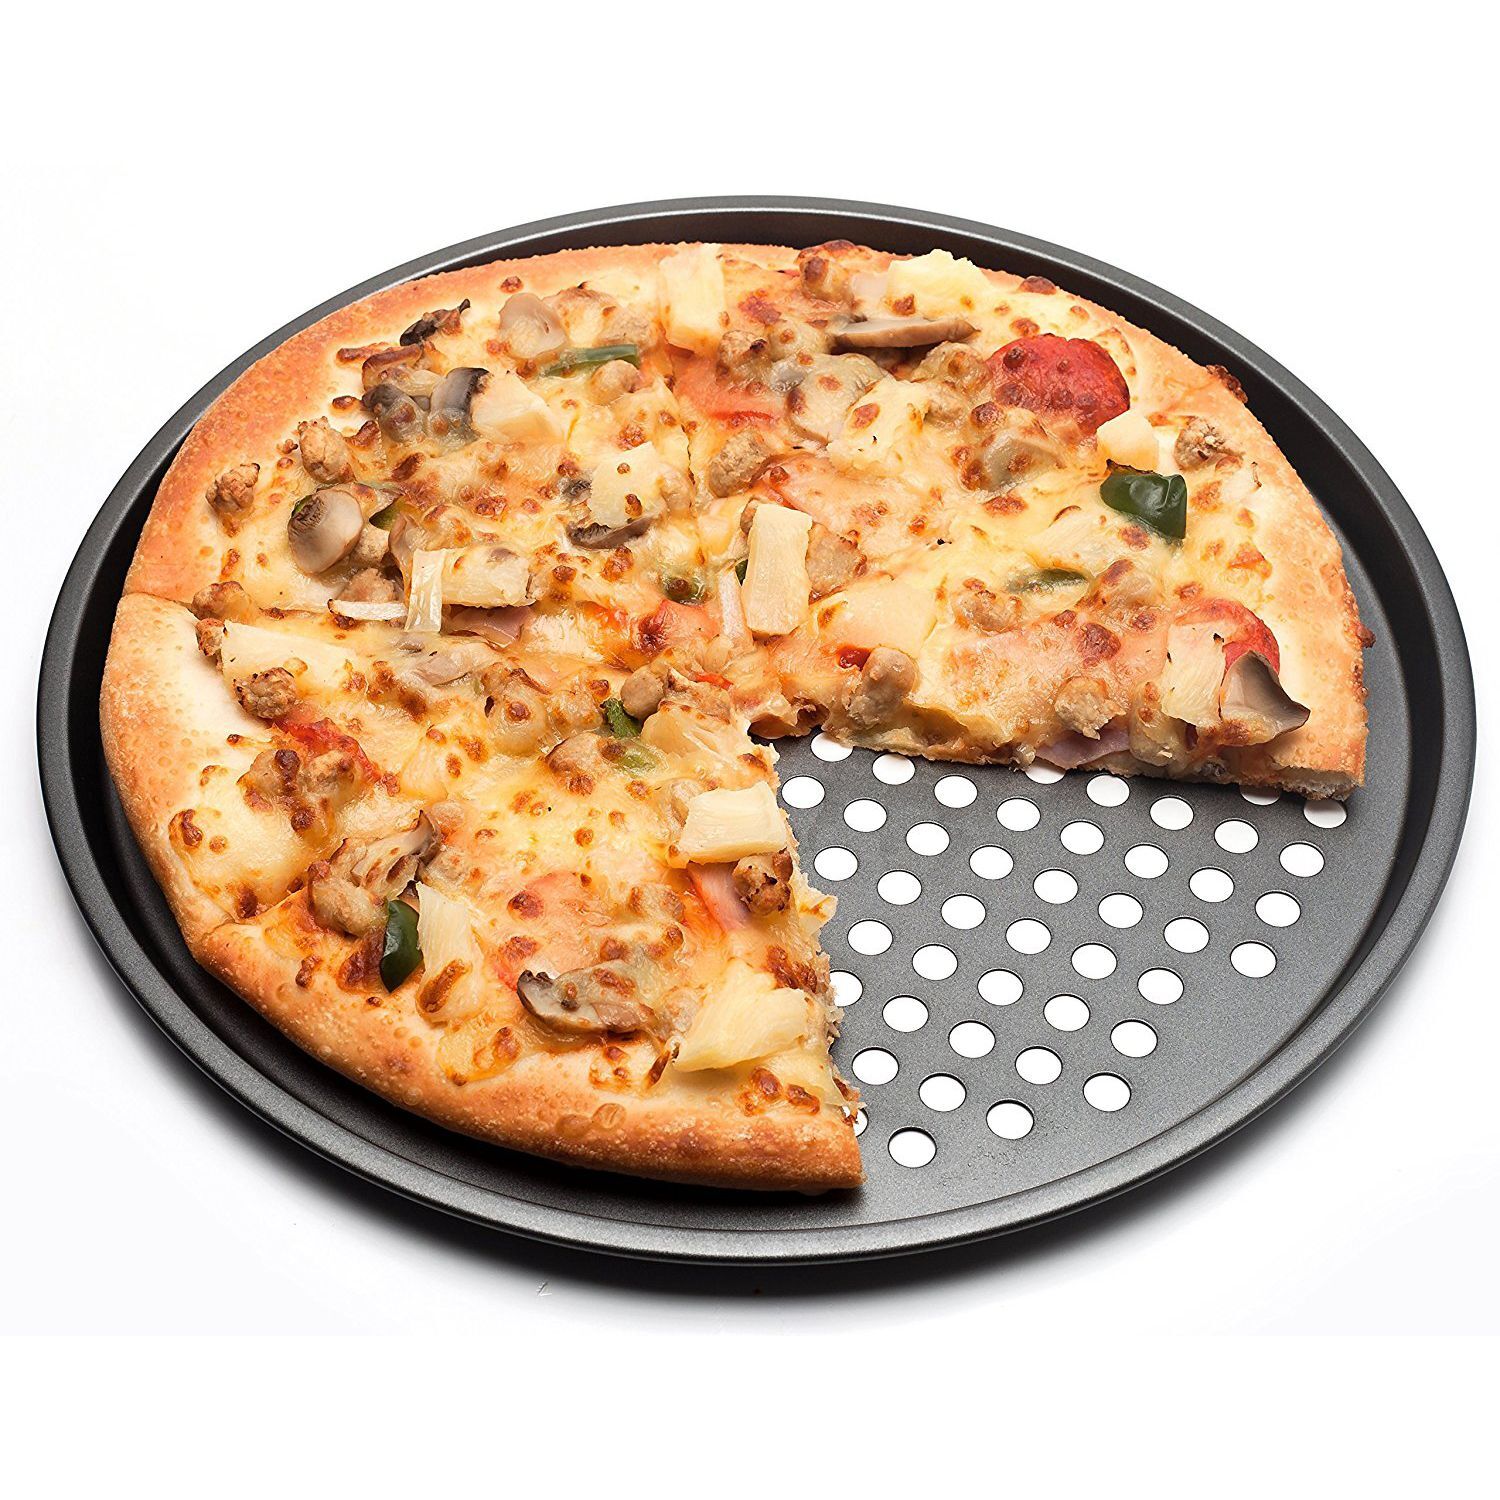 фото форма для выпечки пиццы фото 1